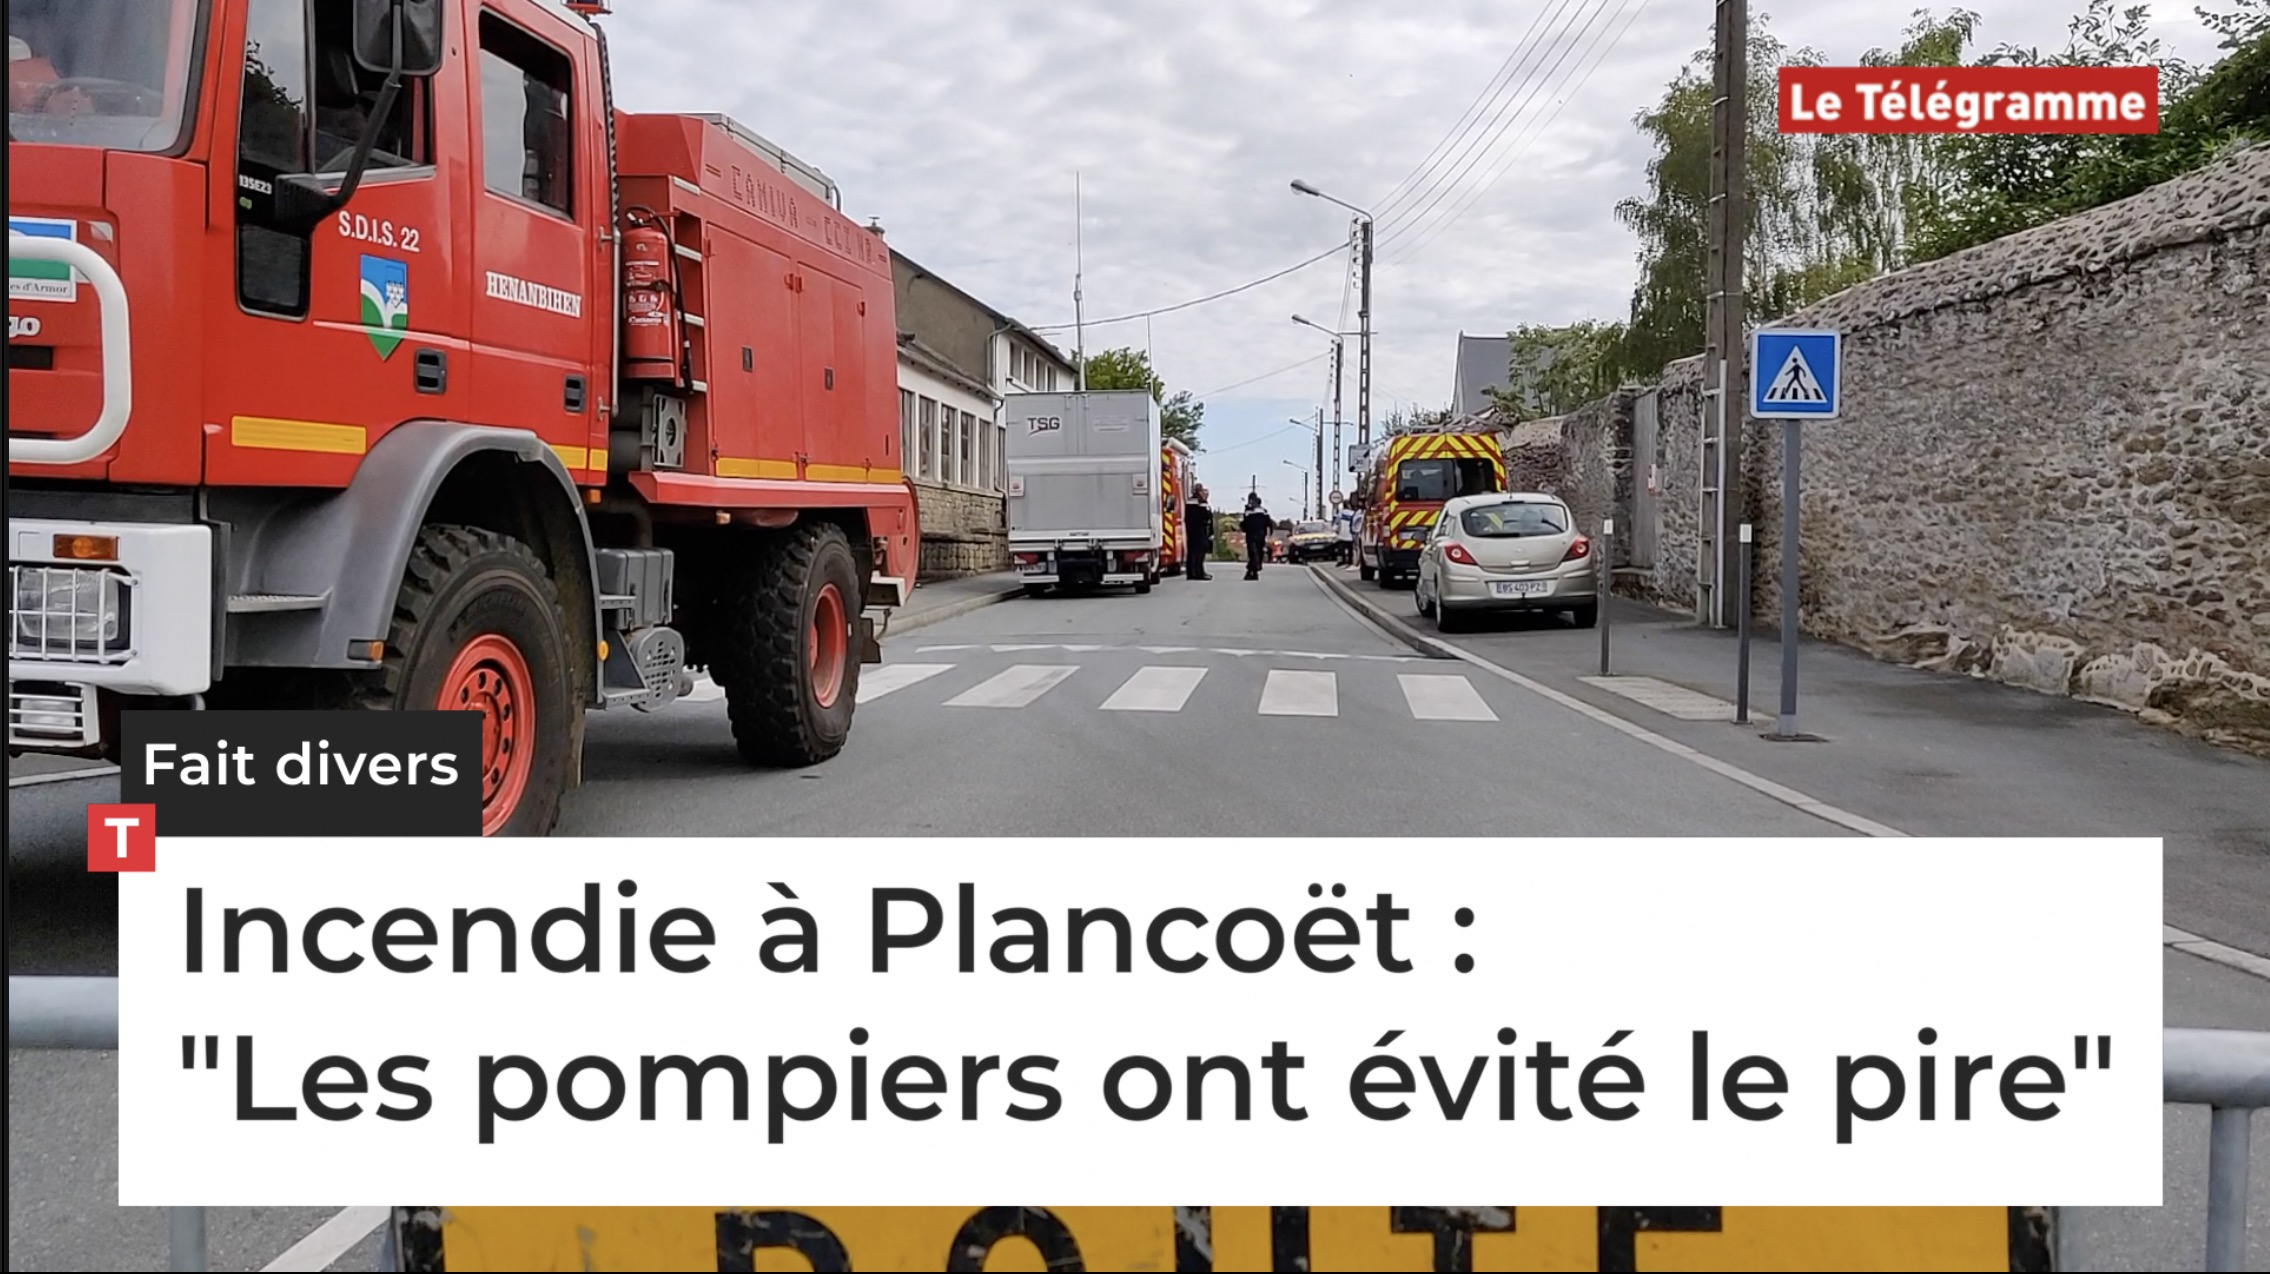 Incendie à Plancoët : "Les pompiers ont évité le pire" (Le Télégramme)